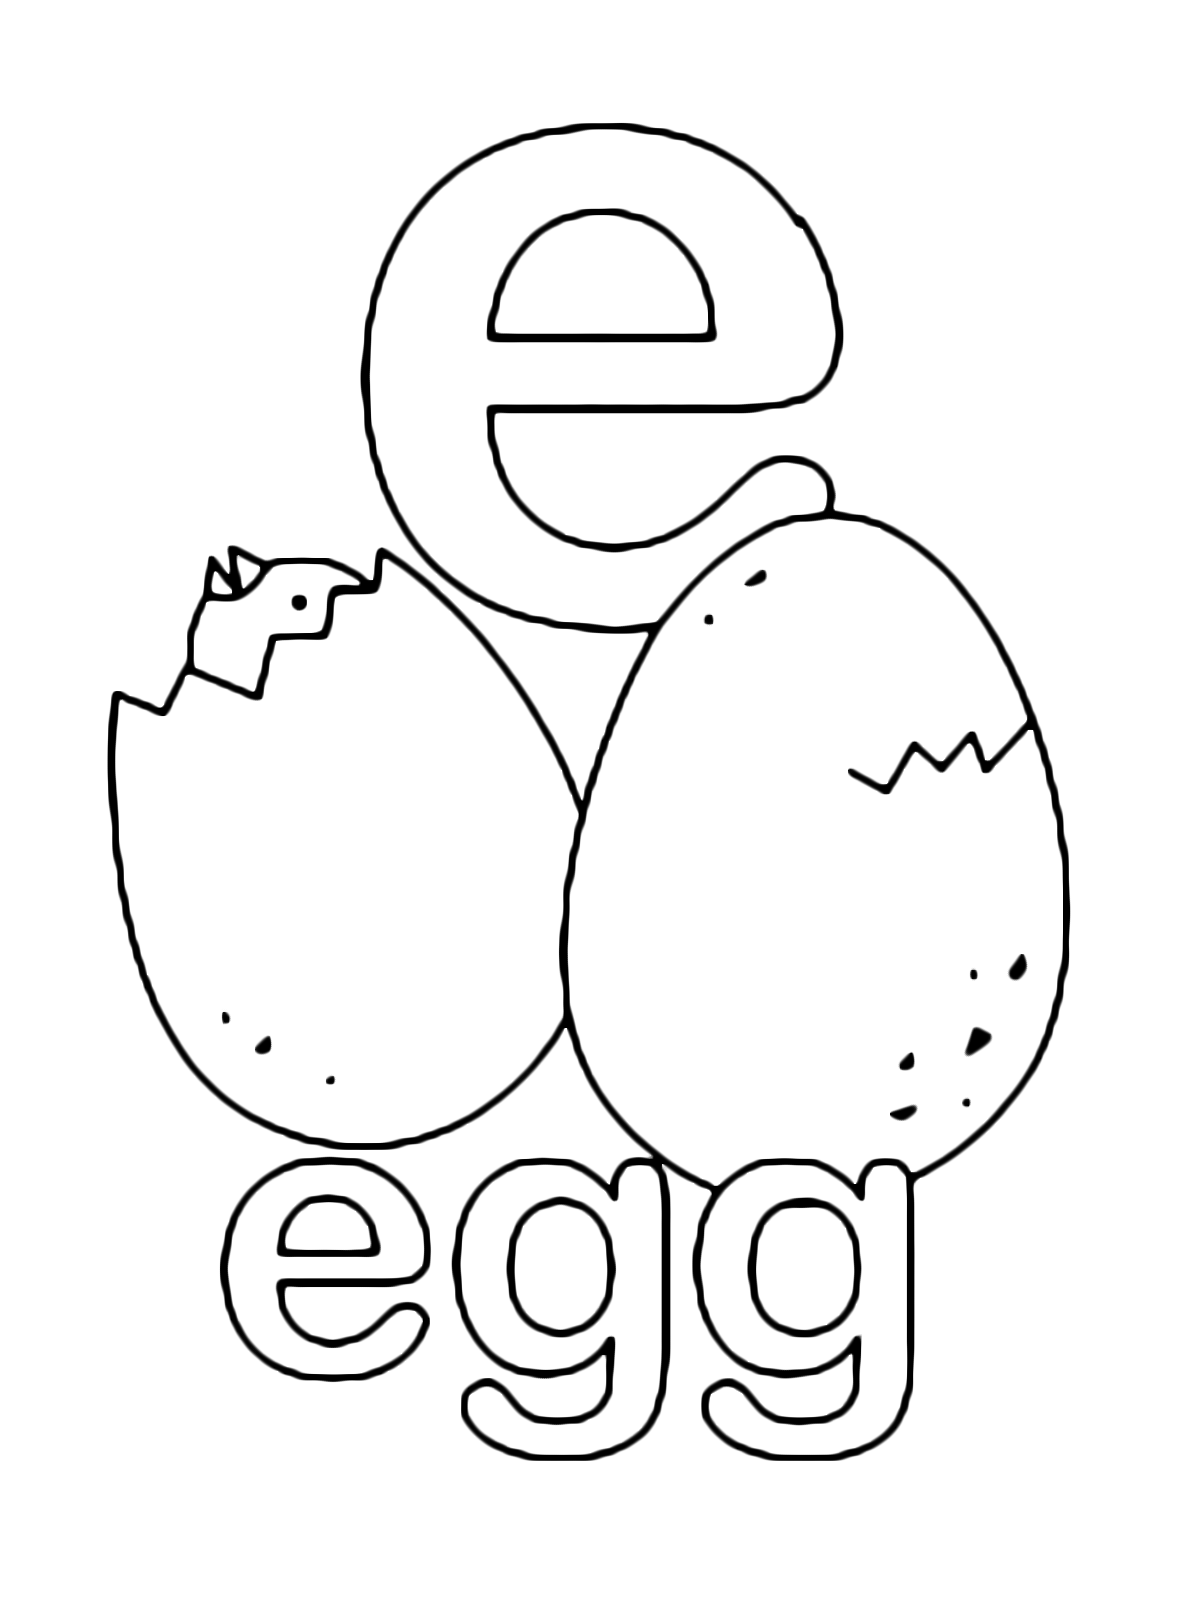 Lettere e numeri - Lettera e in stampato minuscolo di egg (uovo) in Inglese